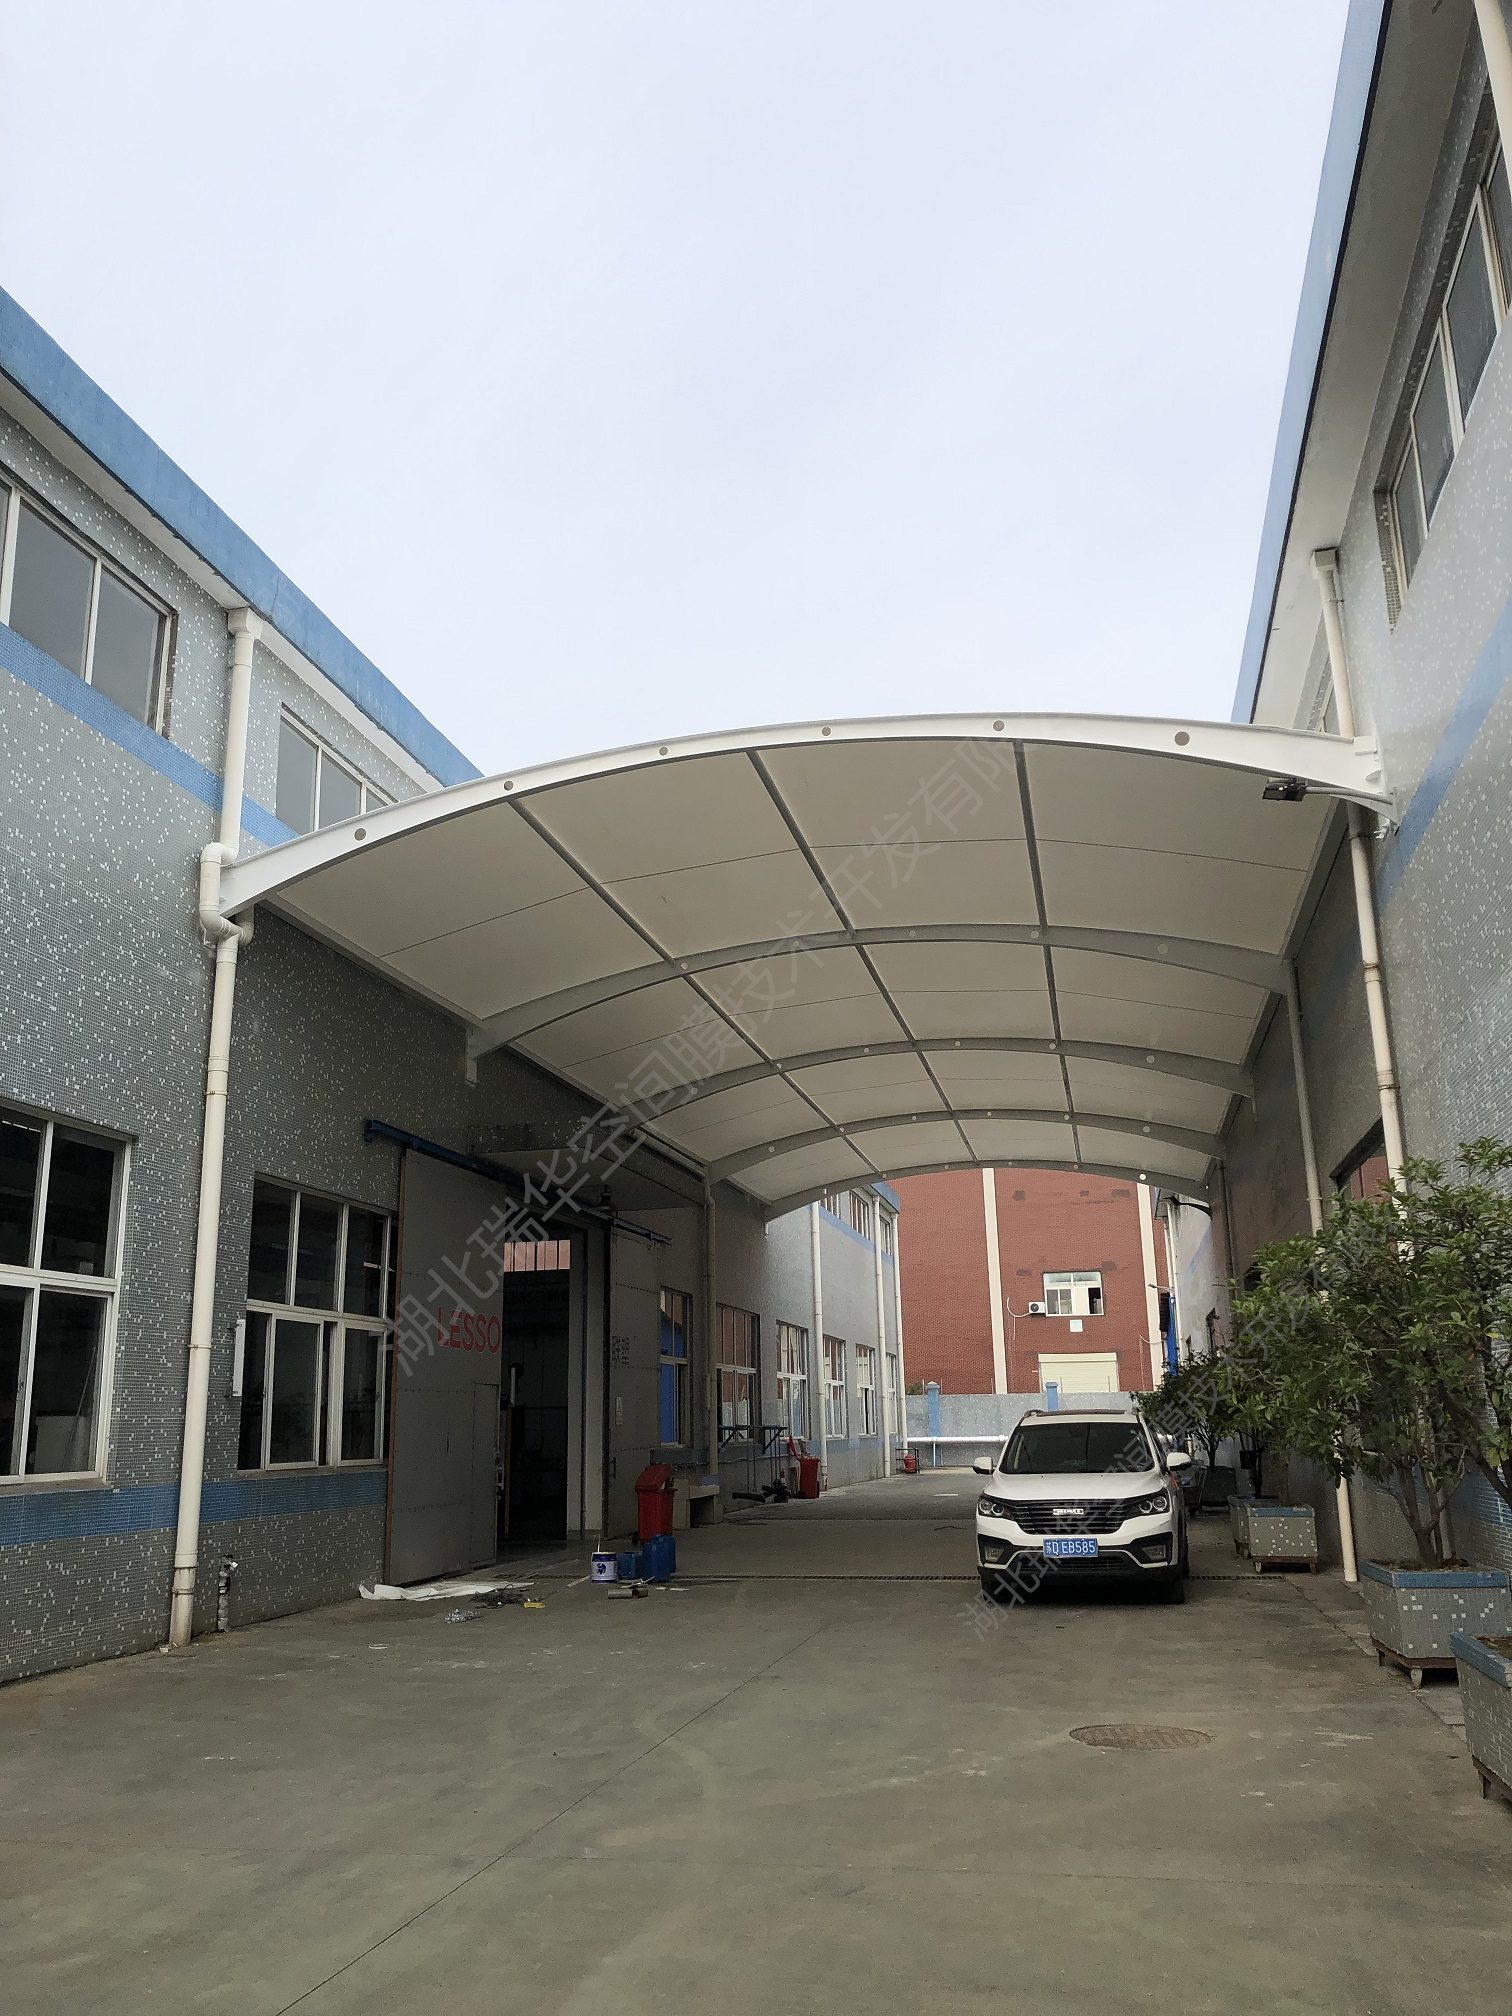 工厂过道遮阳棚膜结构膜结构雨棚拱形膜结构膜结构厂家安装施工